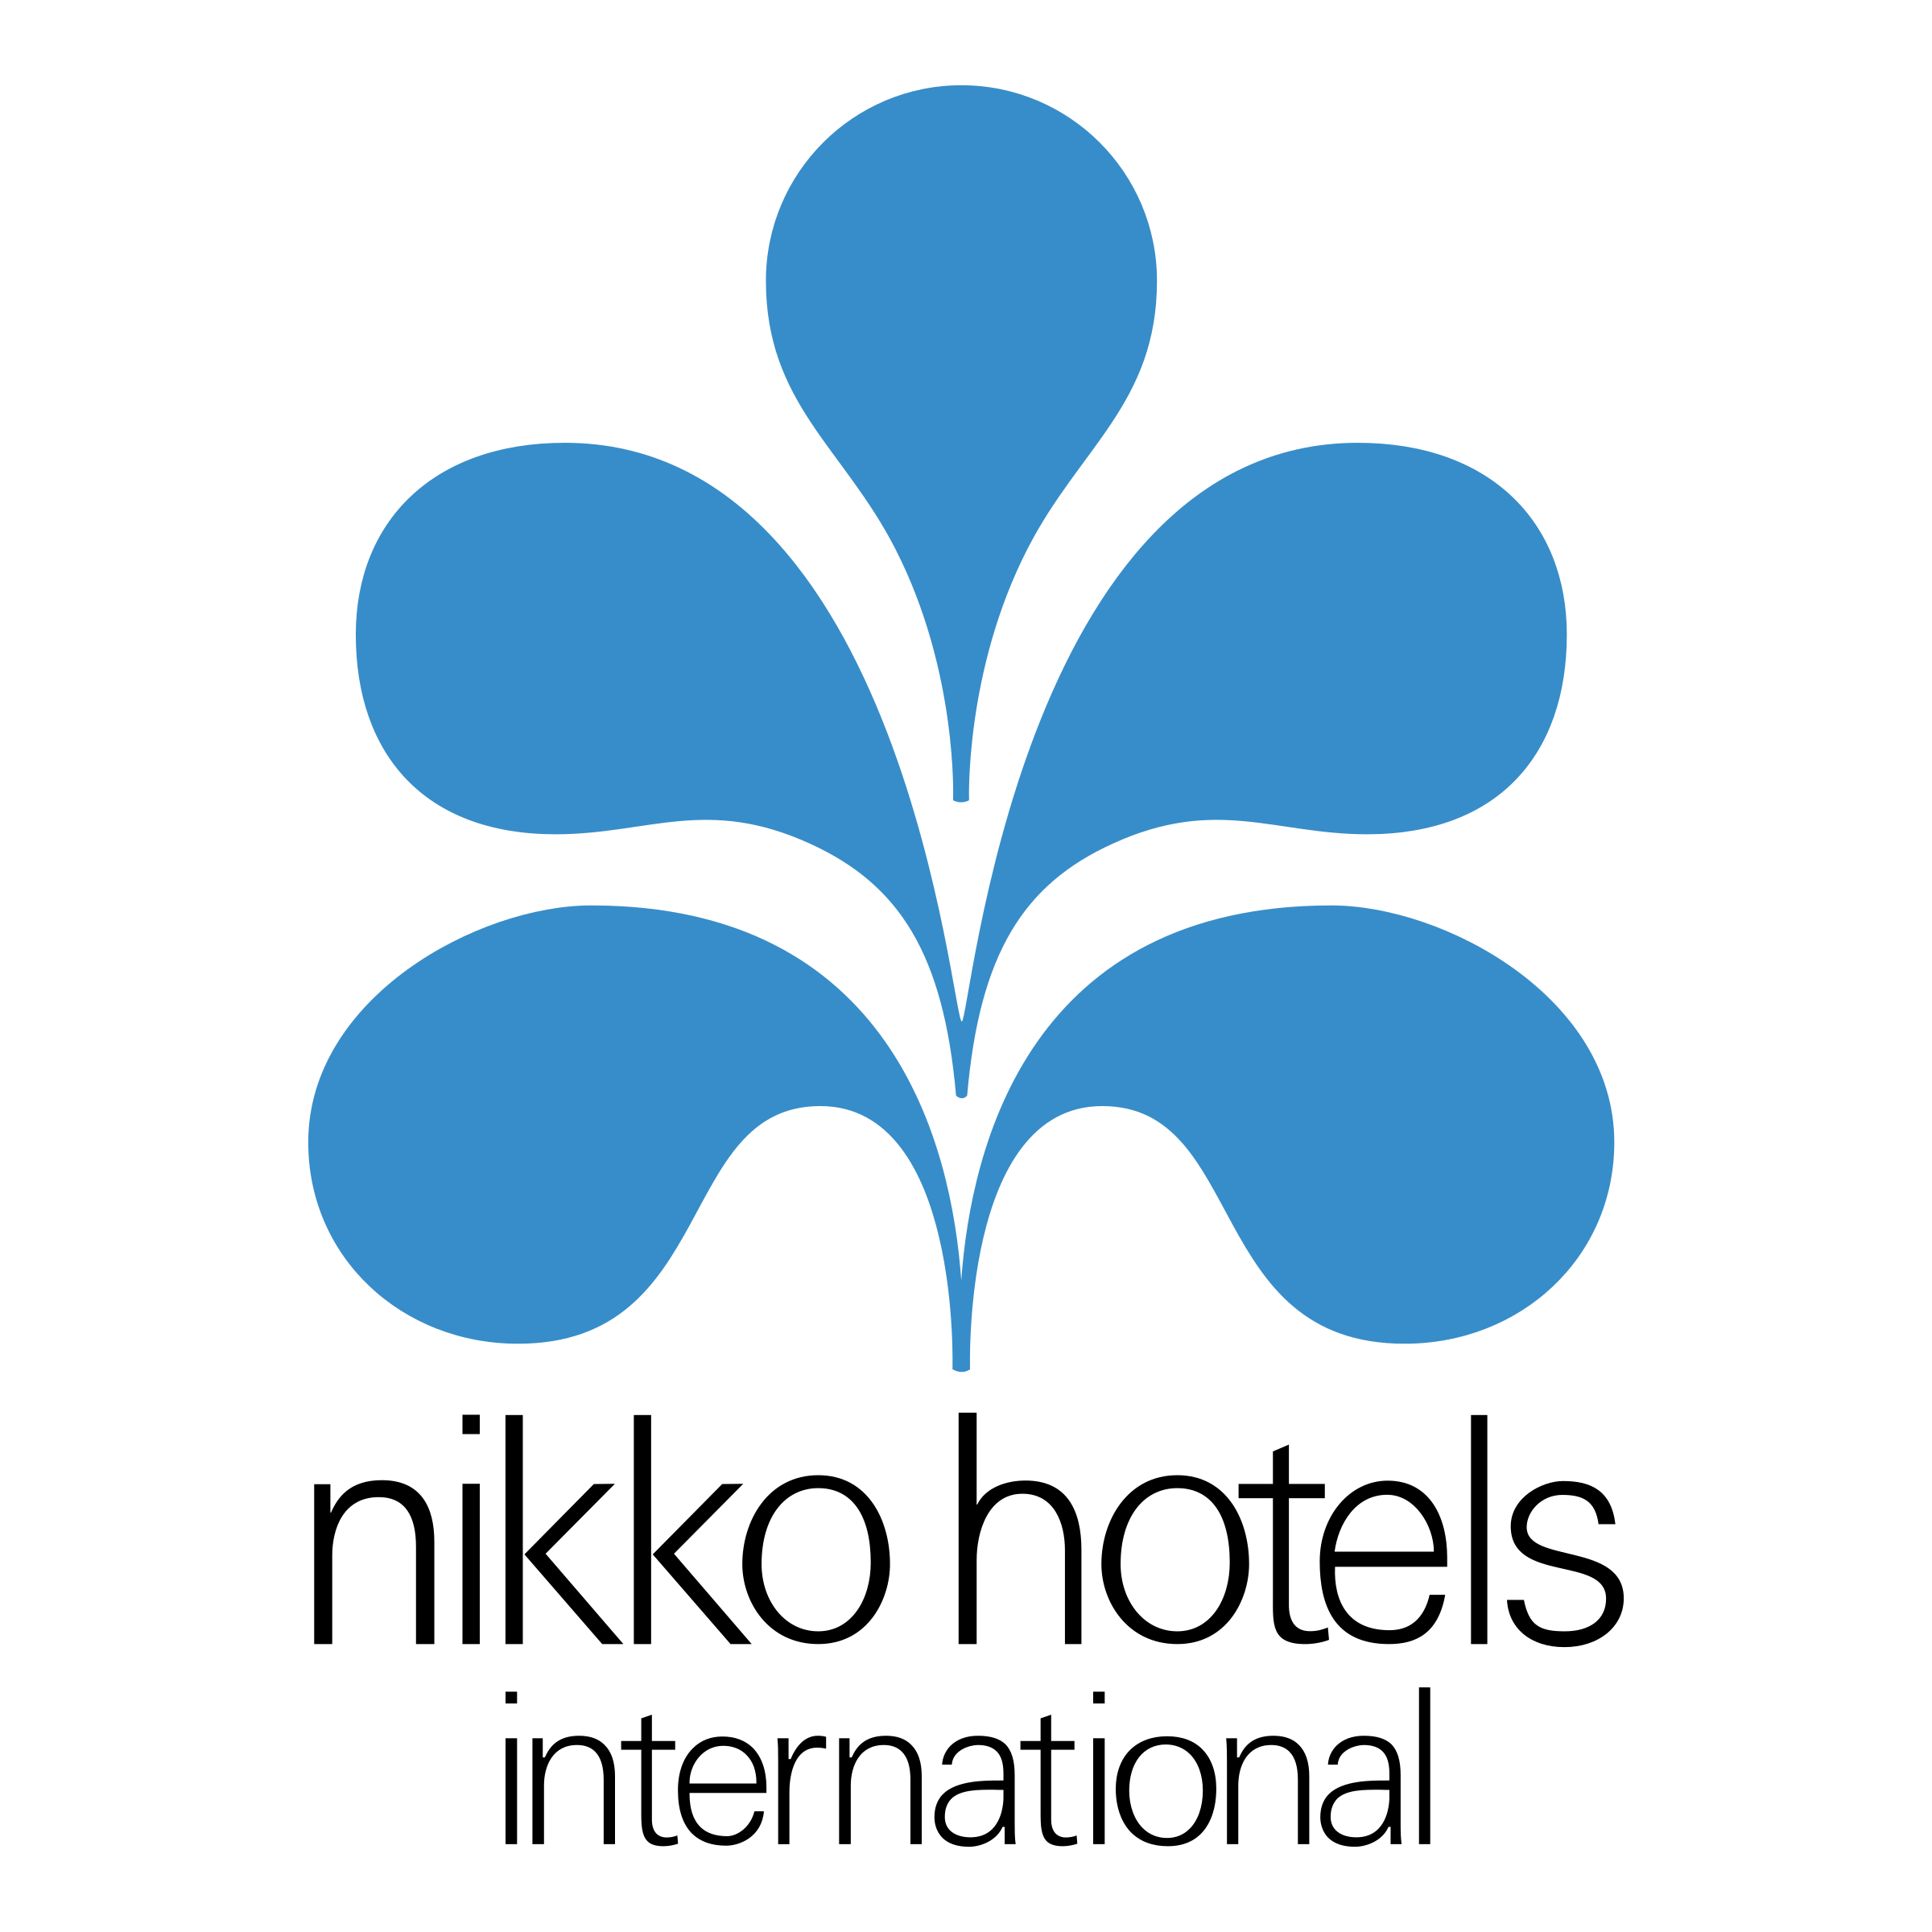 Hotels International Logo - Nikko Hotels International Logo PNG Transparent & SVG Vector ...